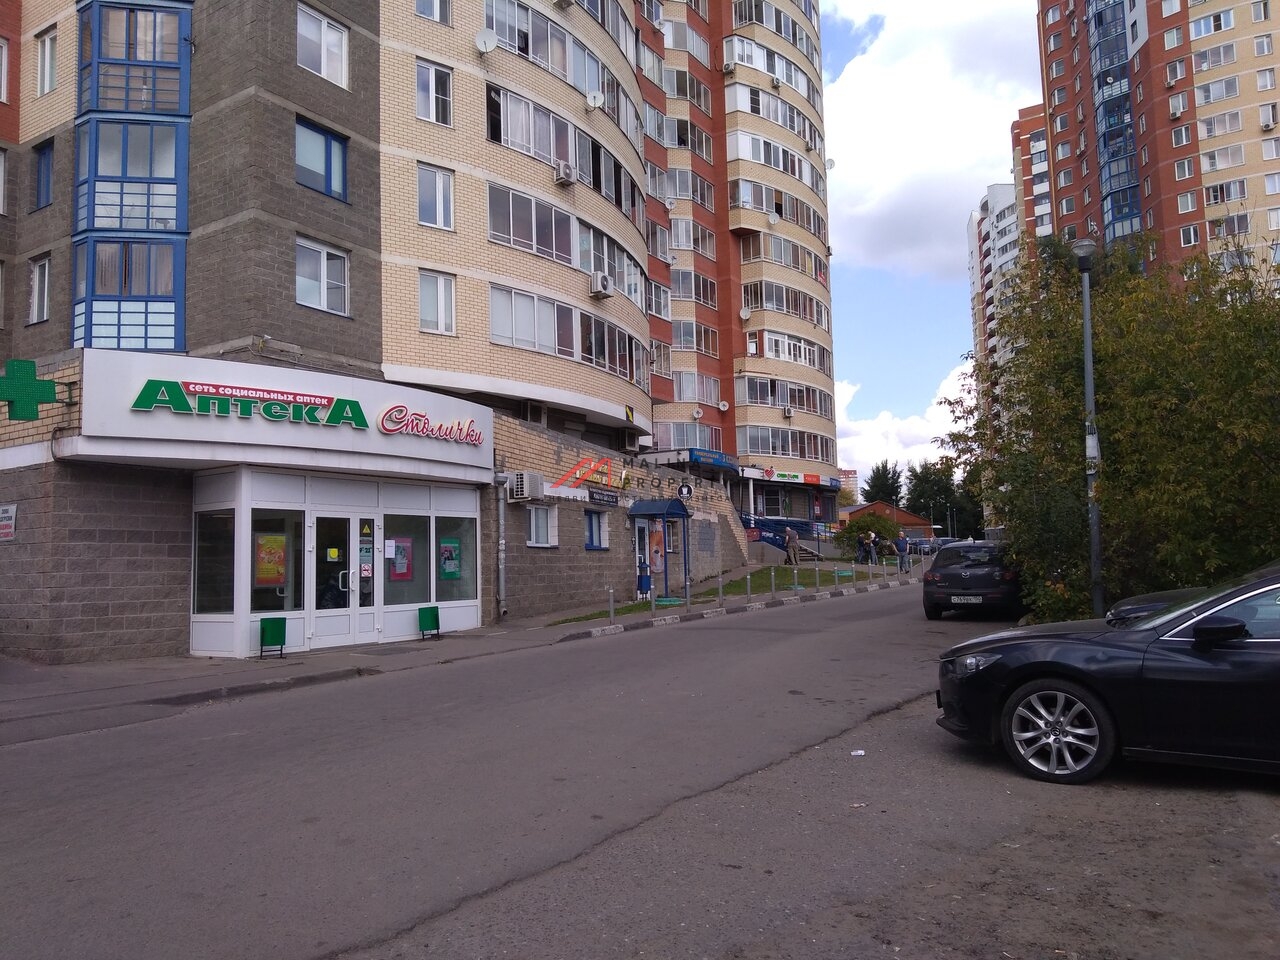 Продажа коммерческого помещения в Пушкино